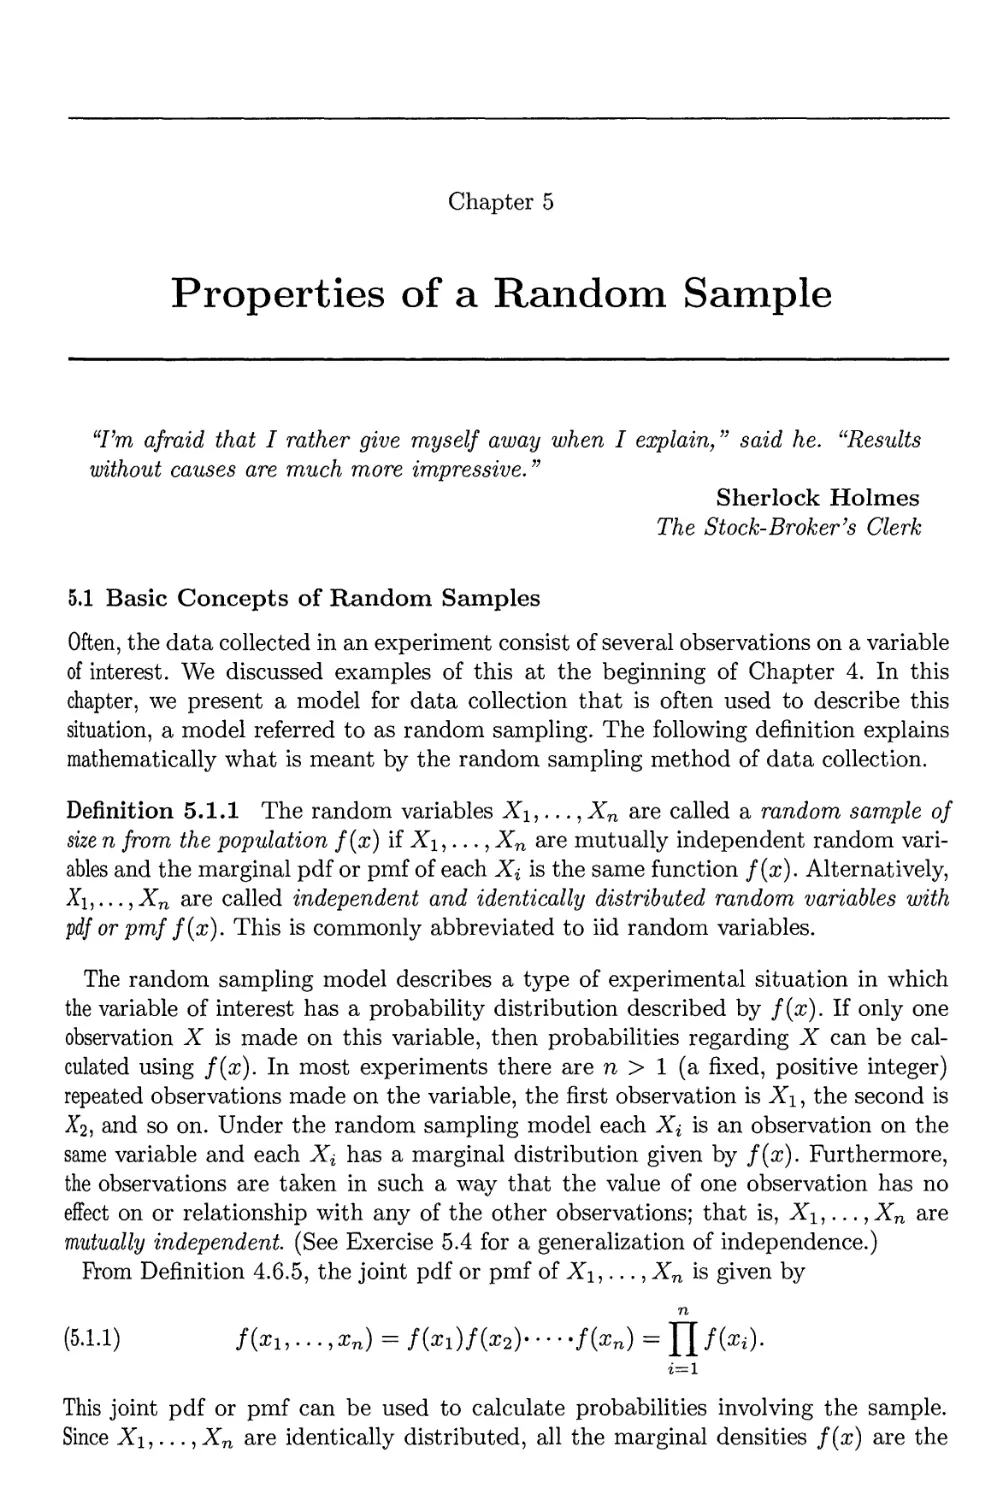 5. Properties of Random Sample